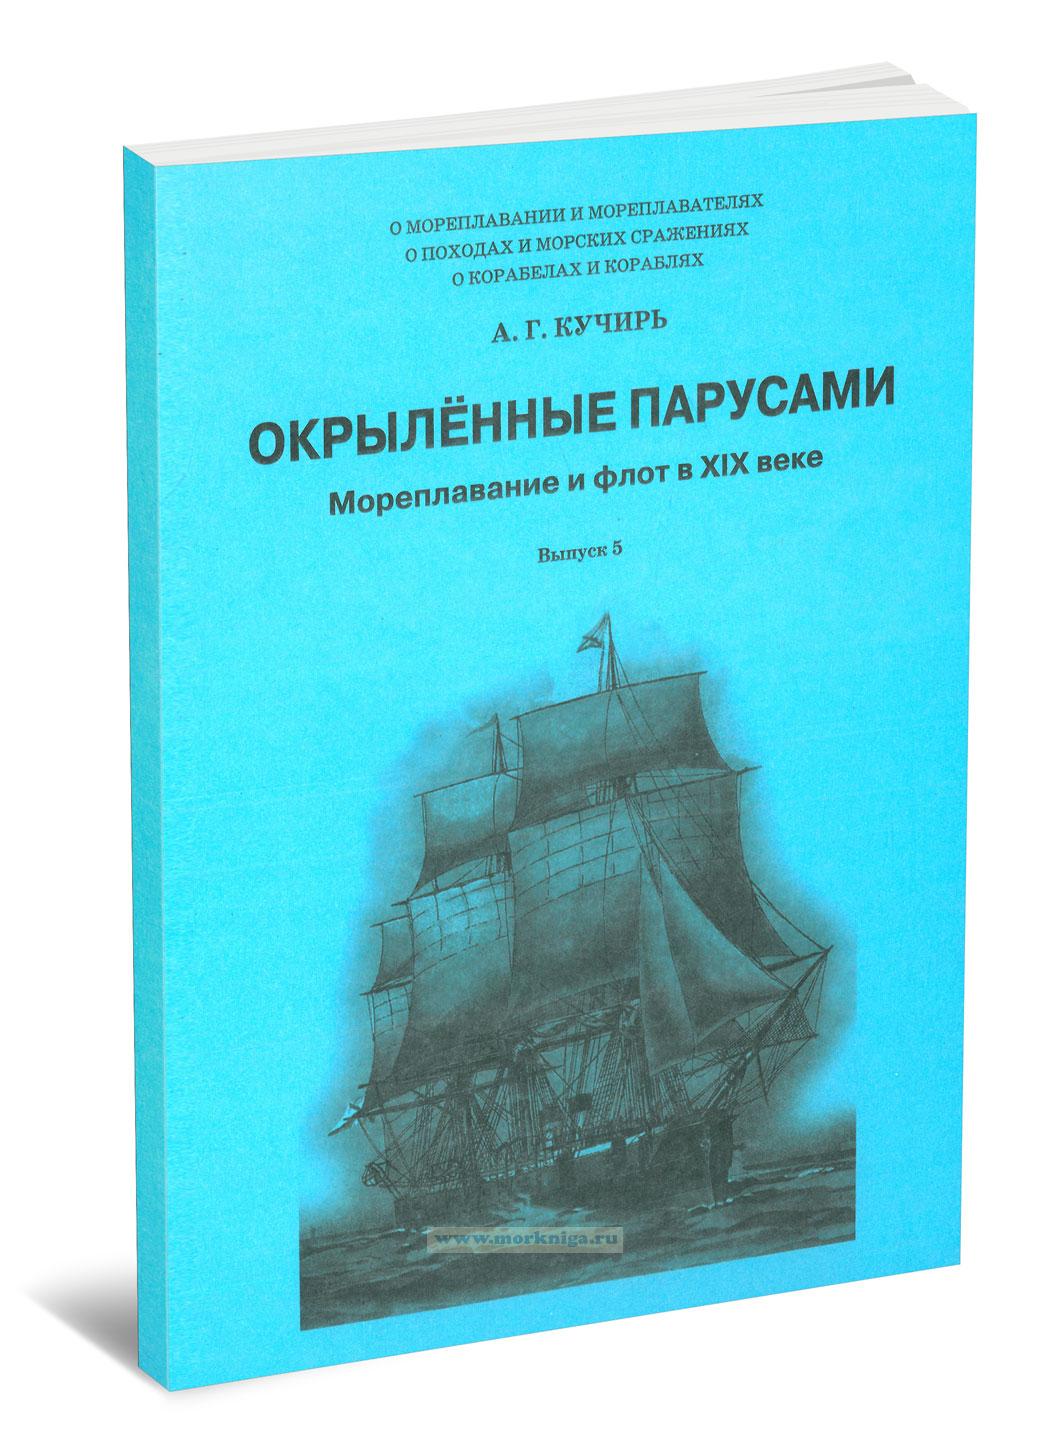 Мореплавание и флот в XIX веке. Выпуск 5